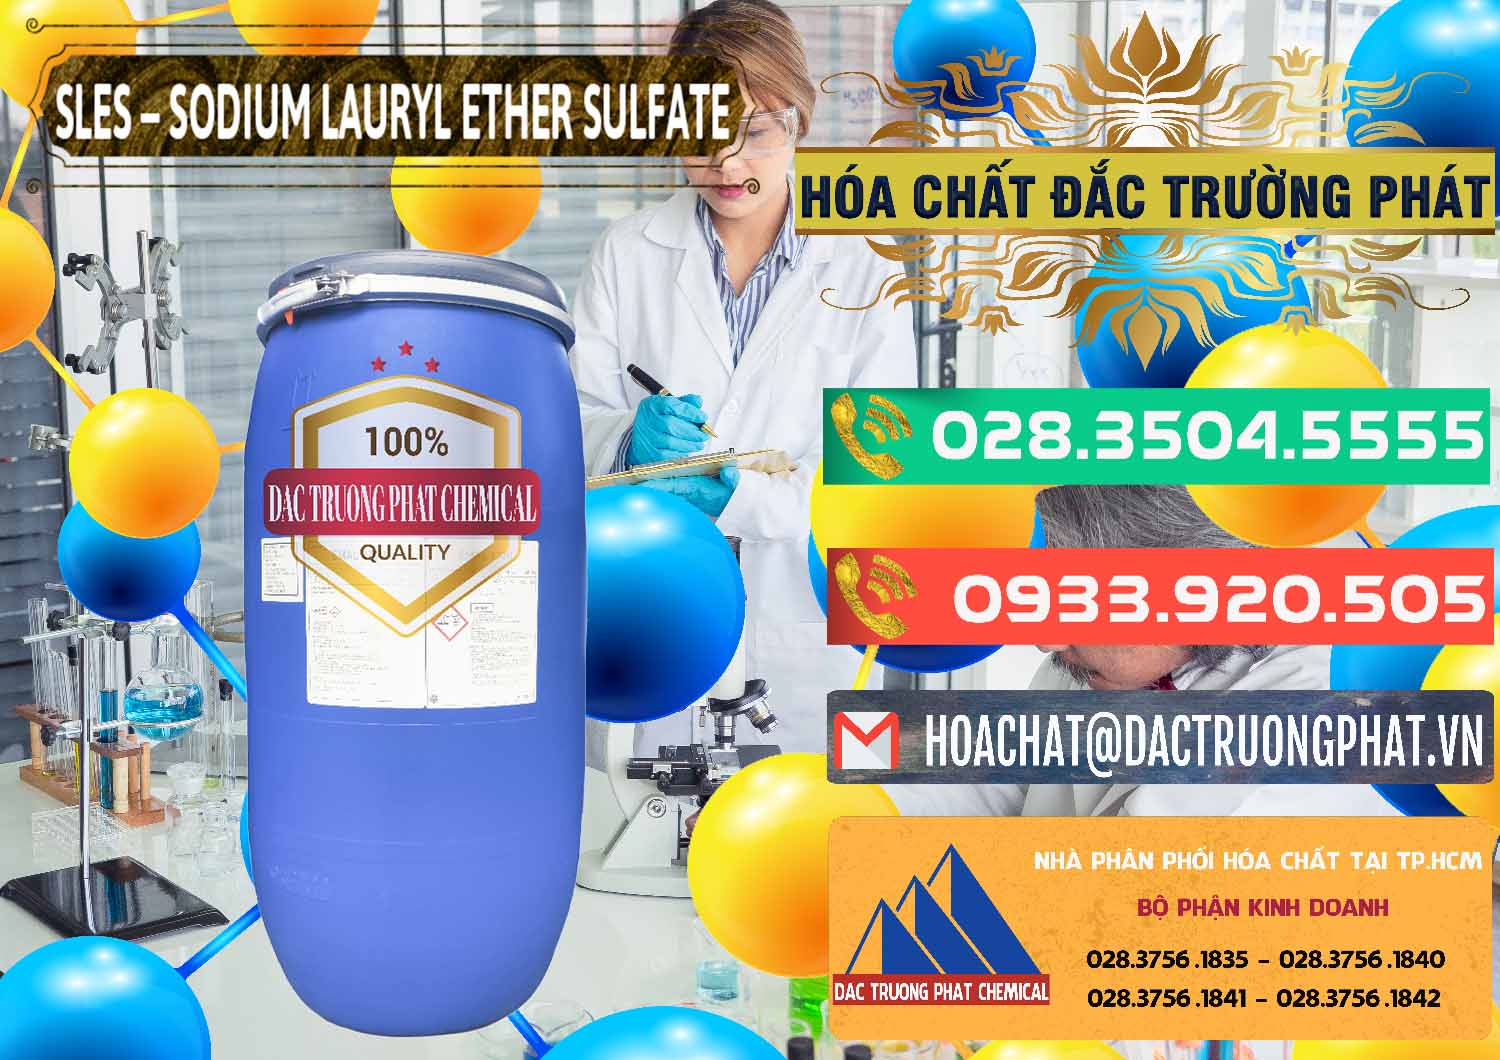 Kinh doanh ( bán ) Chất Tạo Bọt Sles - Sodium Lauryl Ether Sulphate Kao Indonesia - 0046 - Cty chuyên kinh doanh _ phân phối hóa chất tại TP.HCM - congtyhoachat.com.vn